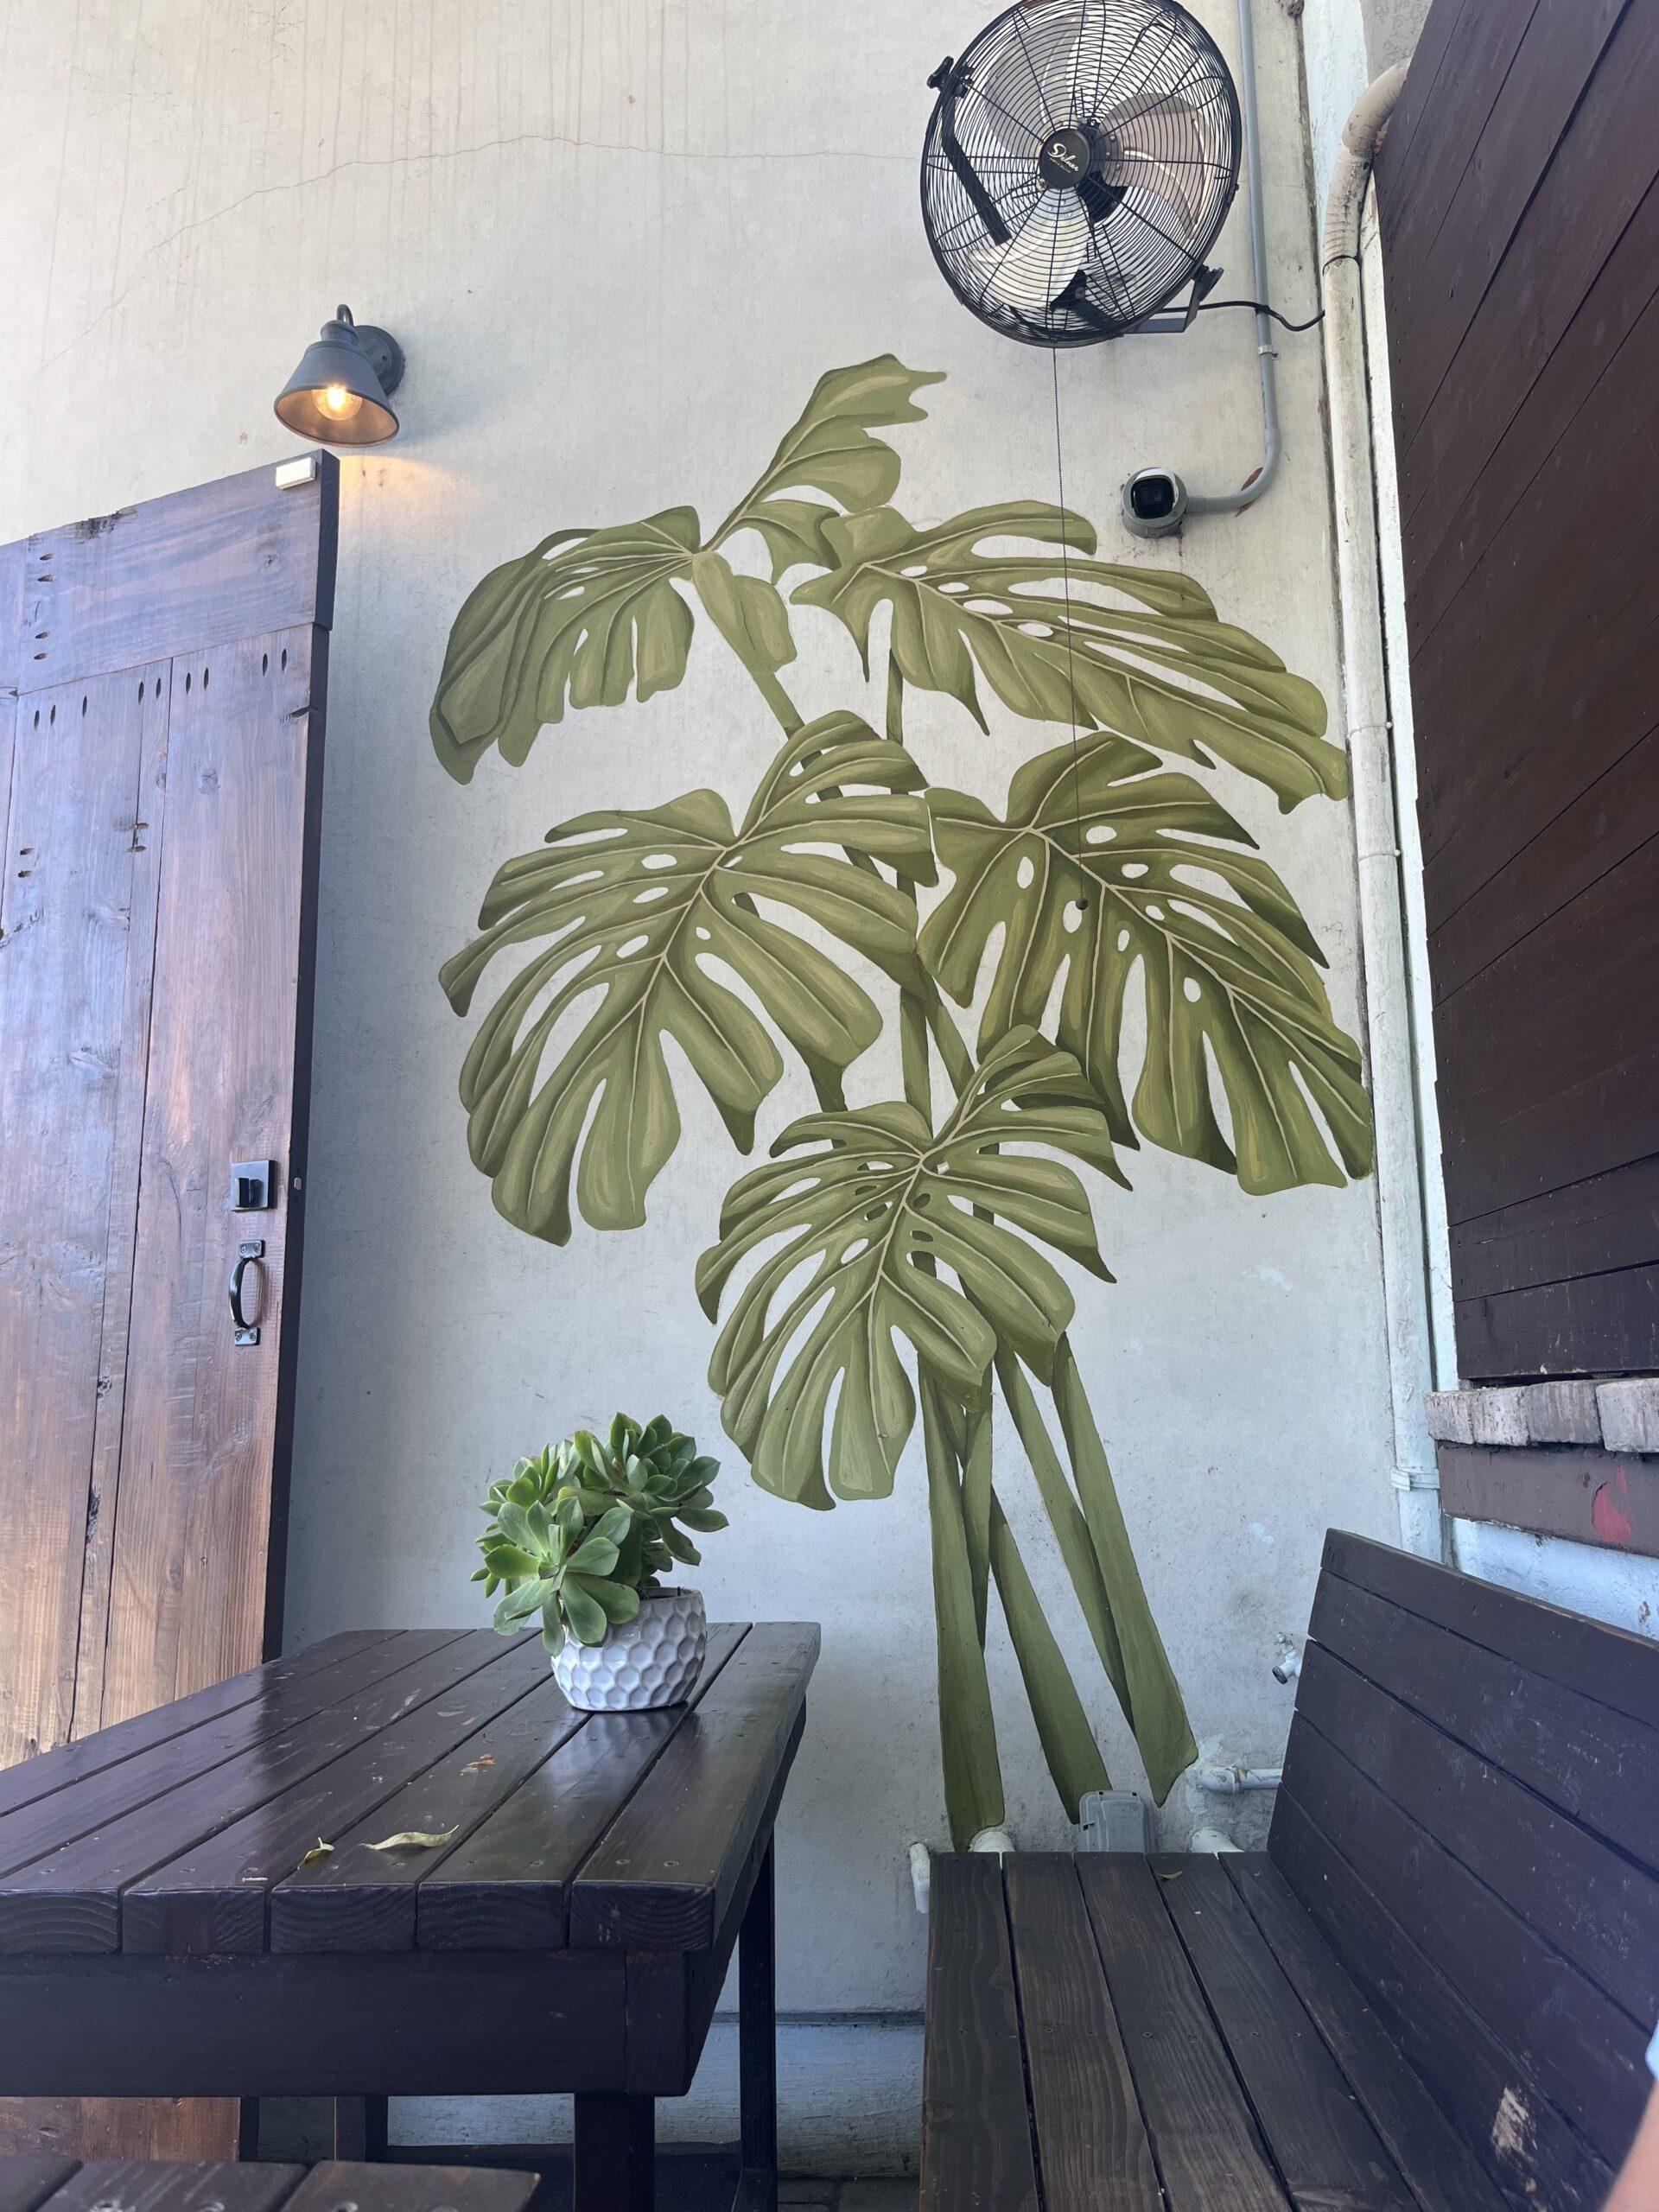 moe coffee plant mural